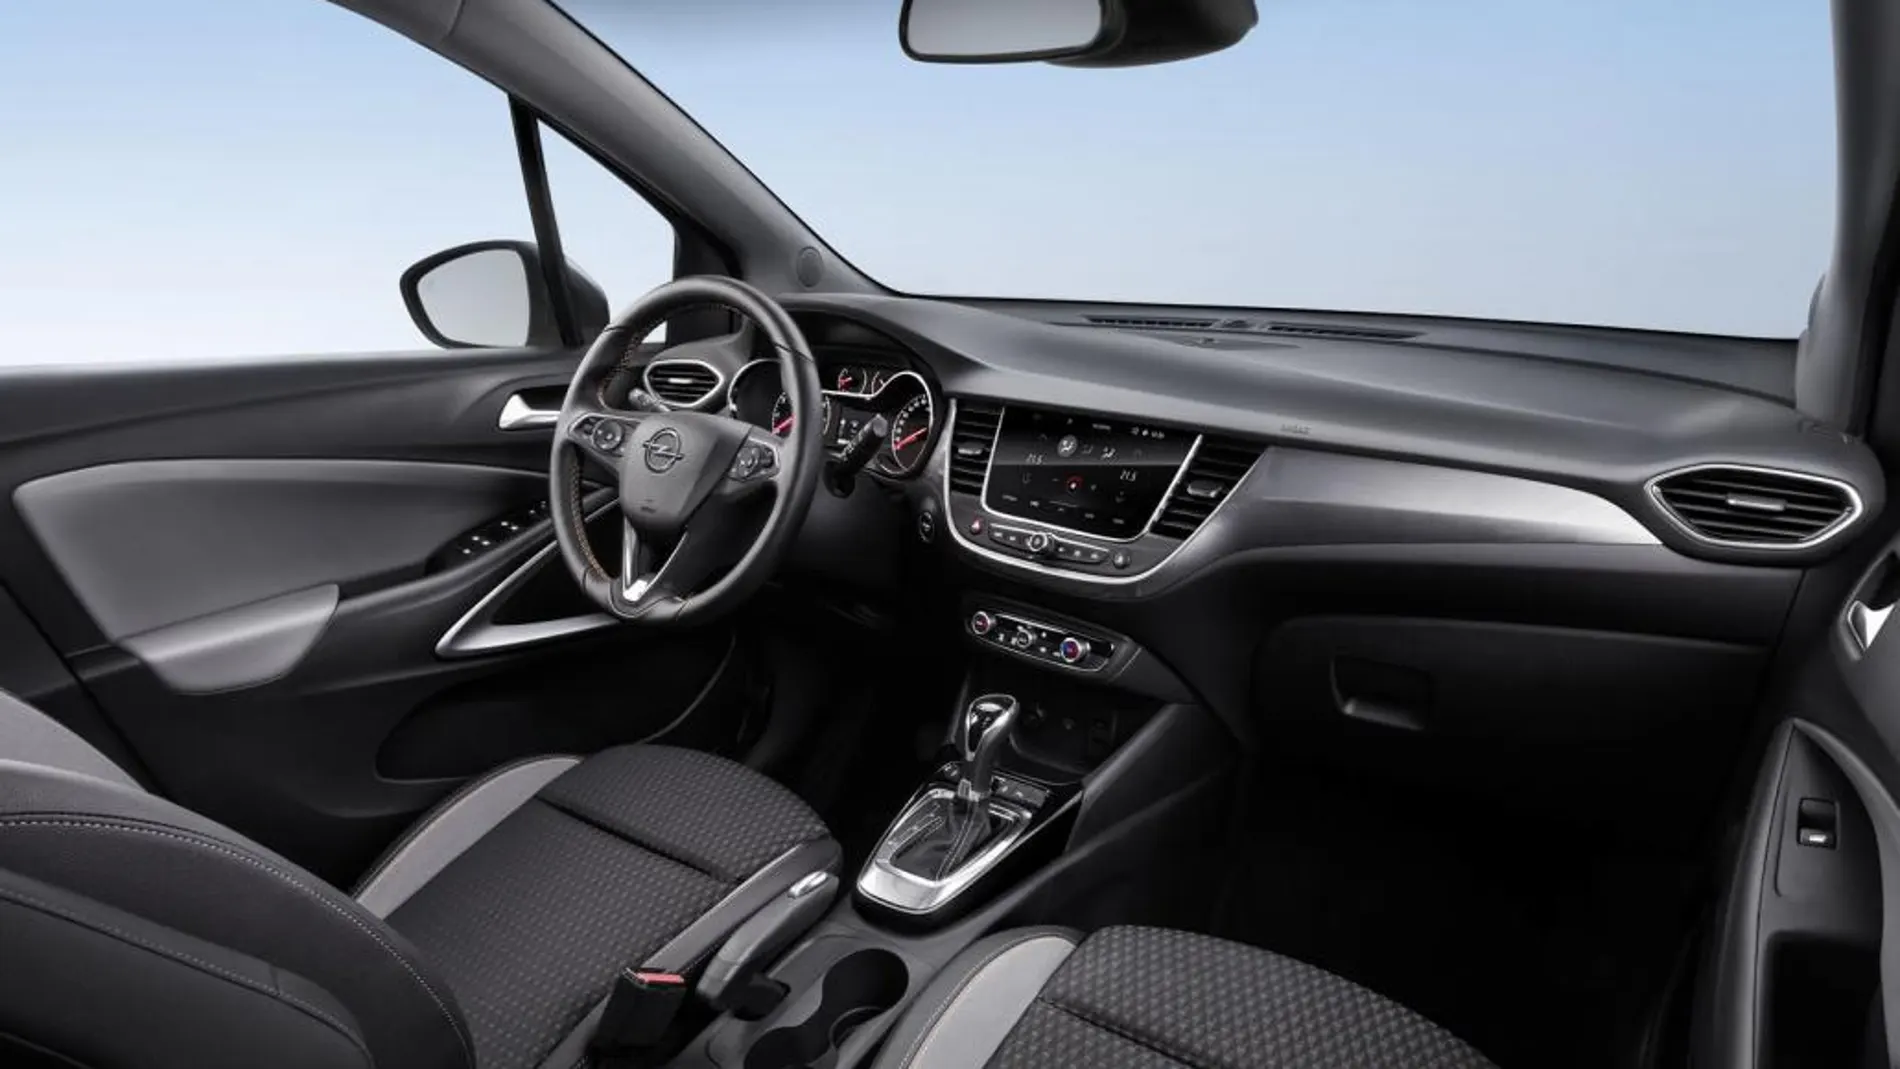 Incluye Opel OnStar con punto de acceso wifi y carga inalámbrica inductiva para el móvil.